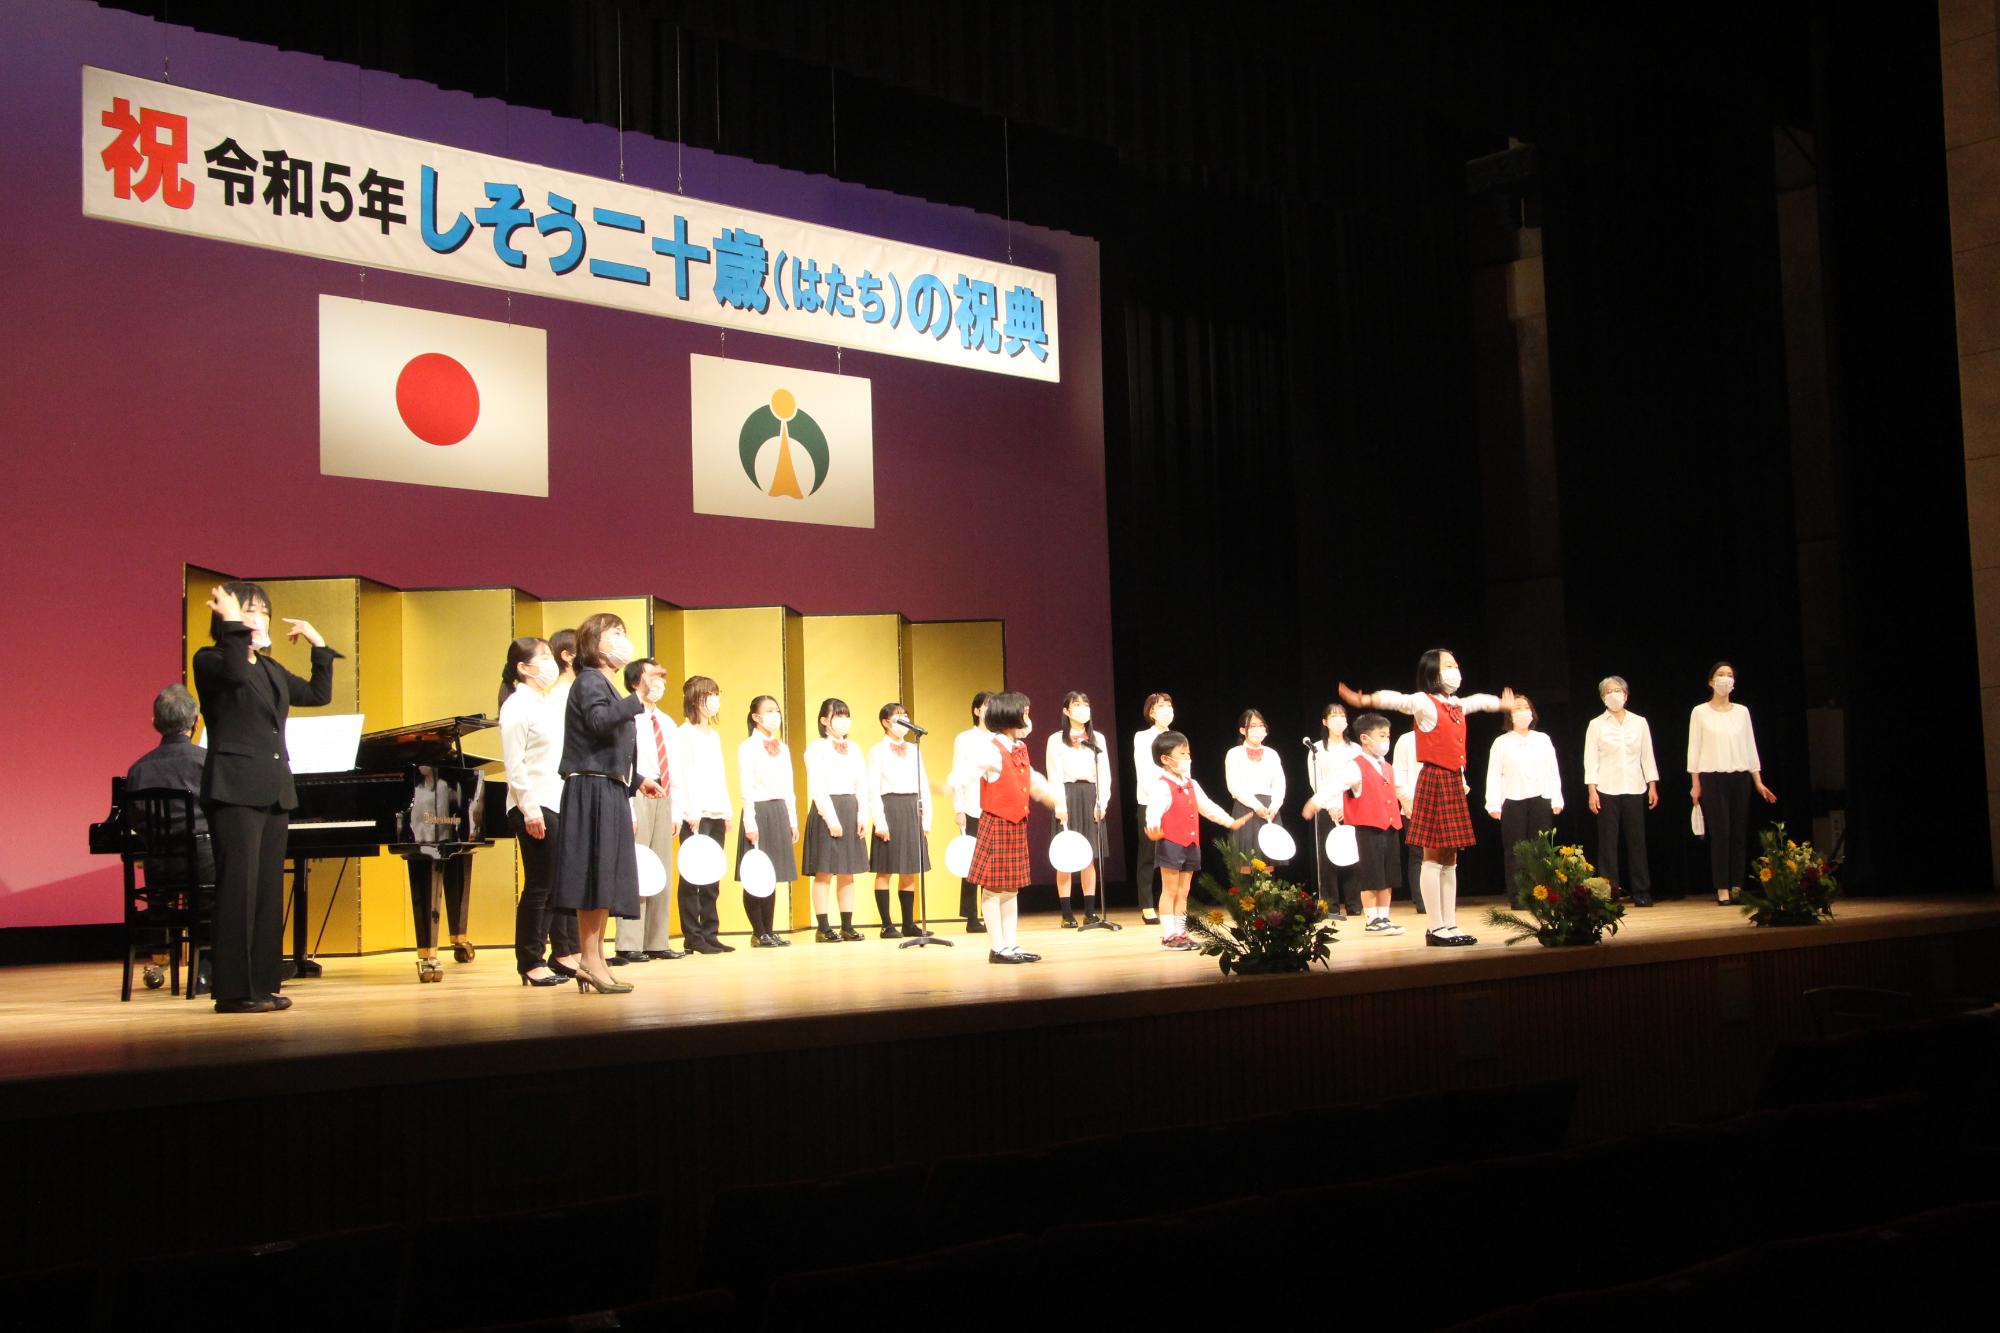 山崎文化会館のステージ上で新成人らを祝う合唱を披露する宍粟市少年少女合唱団の写真